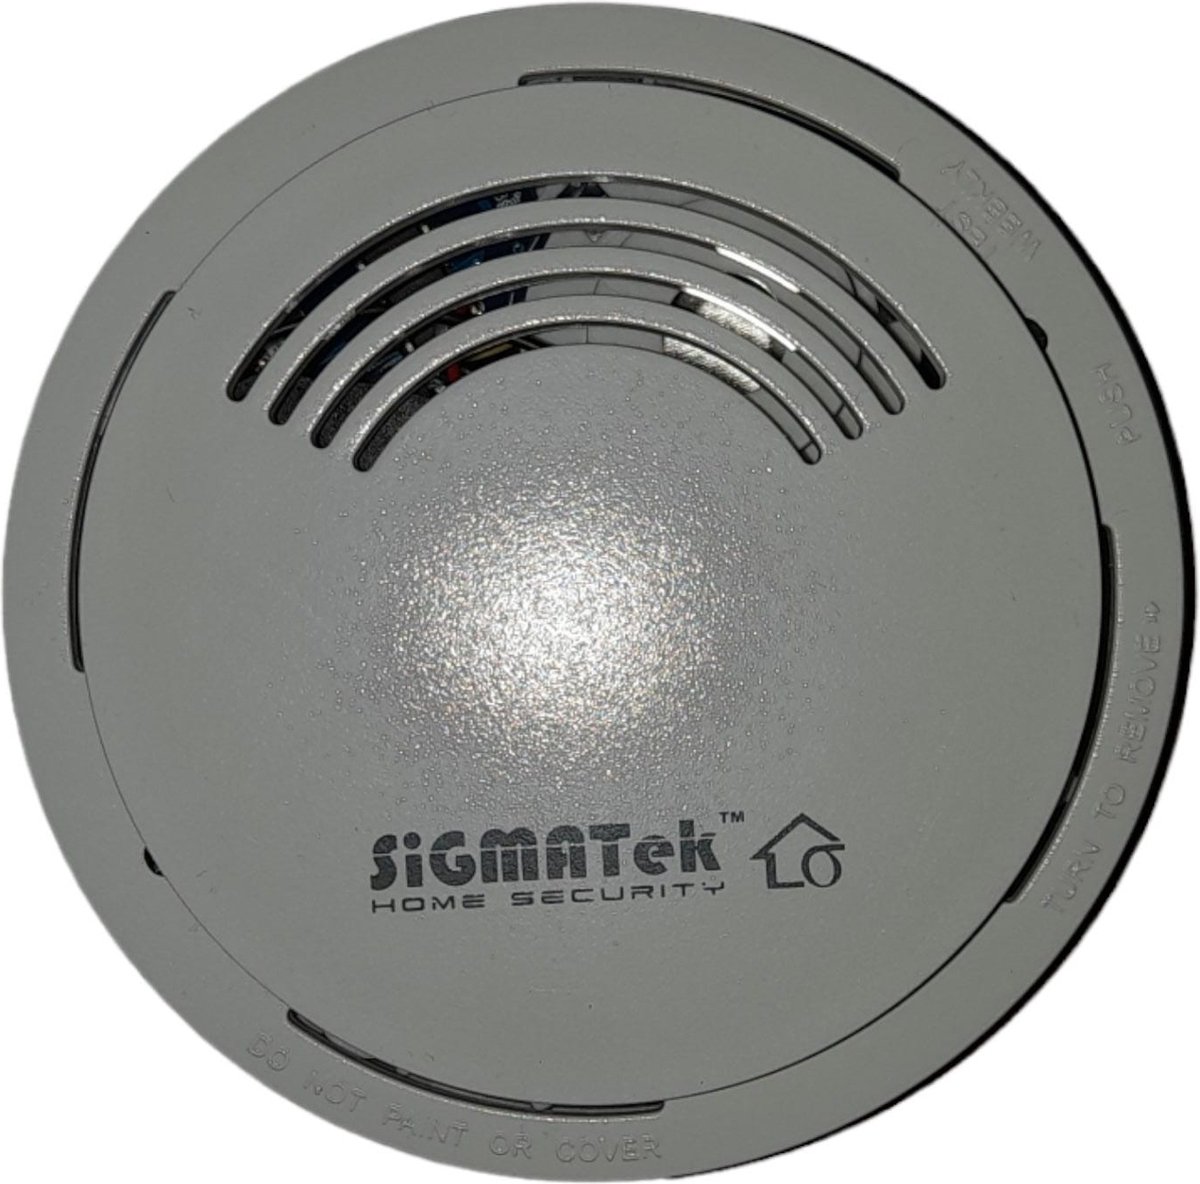 D5A rookmelder voor alle eTIGER Sigmatek en Elro draadloze alarmsystemen.